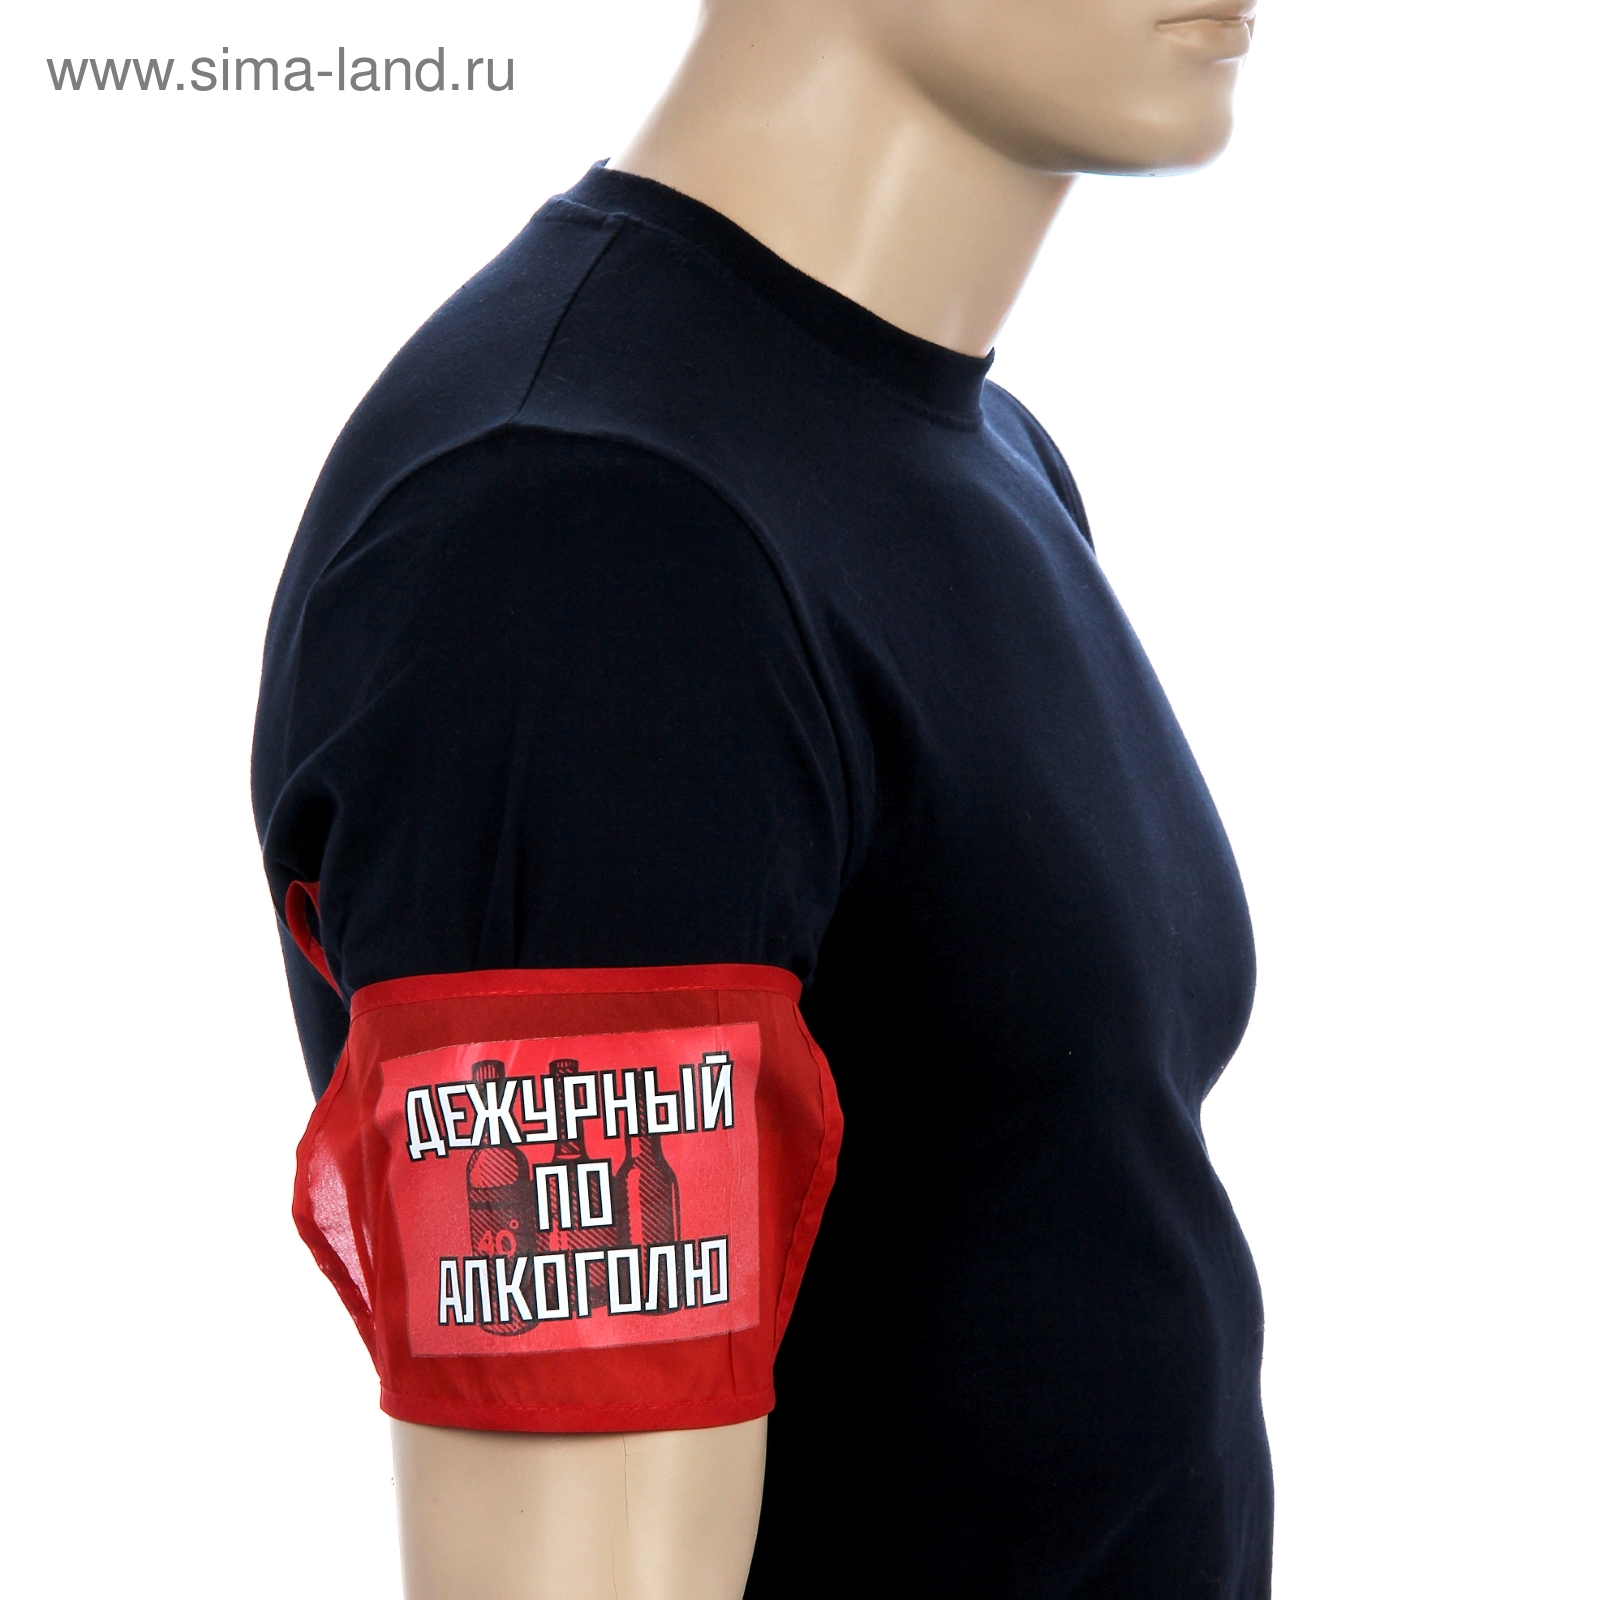 Повязку краснаю на руку на рукав купить в Москве в интернет магазине военторг